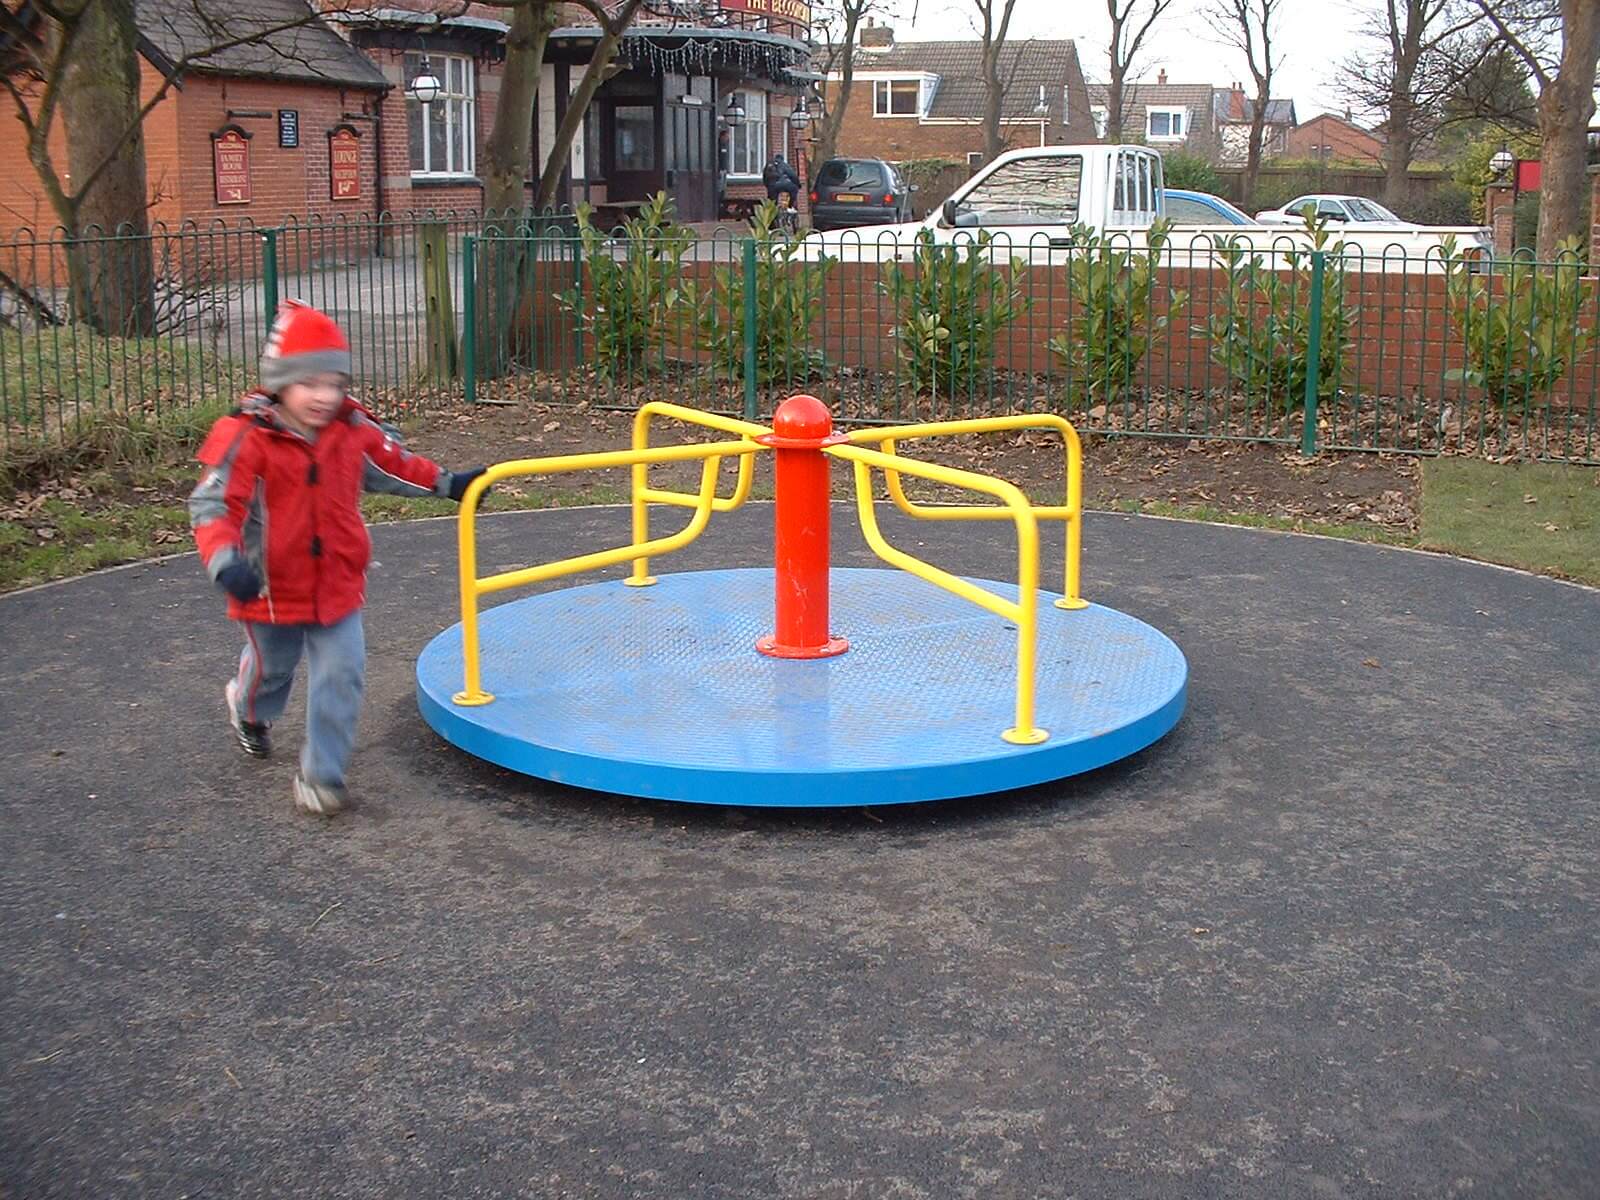 Child Standing Next to Playground Roundabout